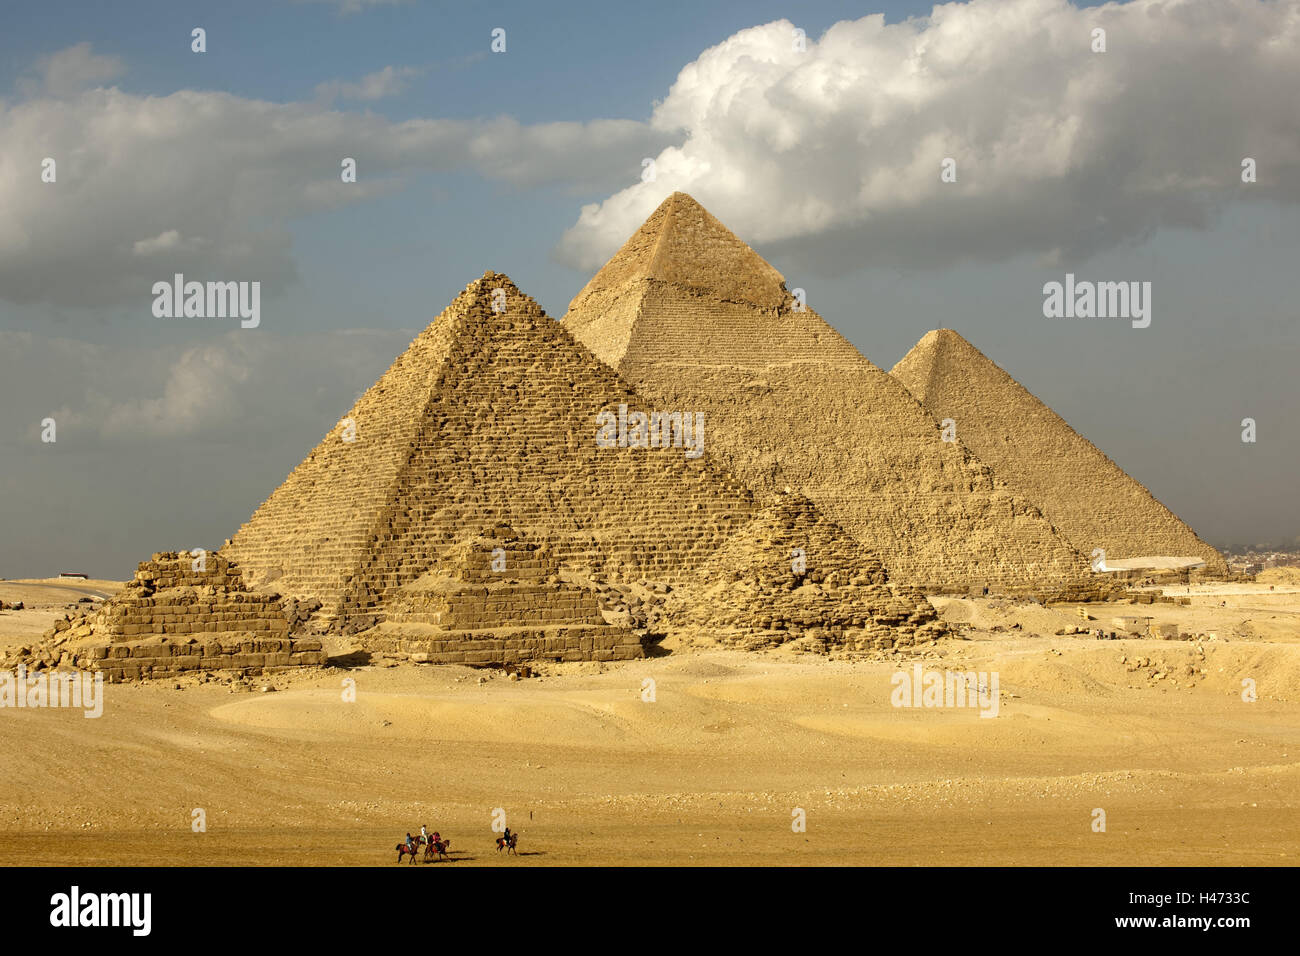 L'Egypte, Le Caire, Gizeh, pyramides, reine des pyramides, Khéphren pyramide, pyramide de Khéops, pyramide, Ripperblackstaff Banque D'Images